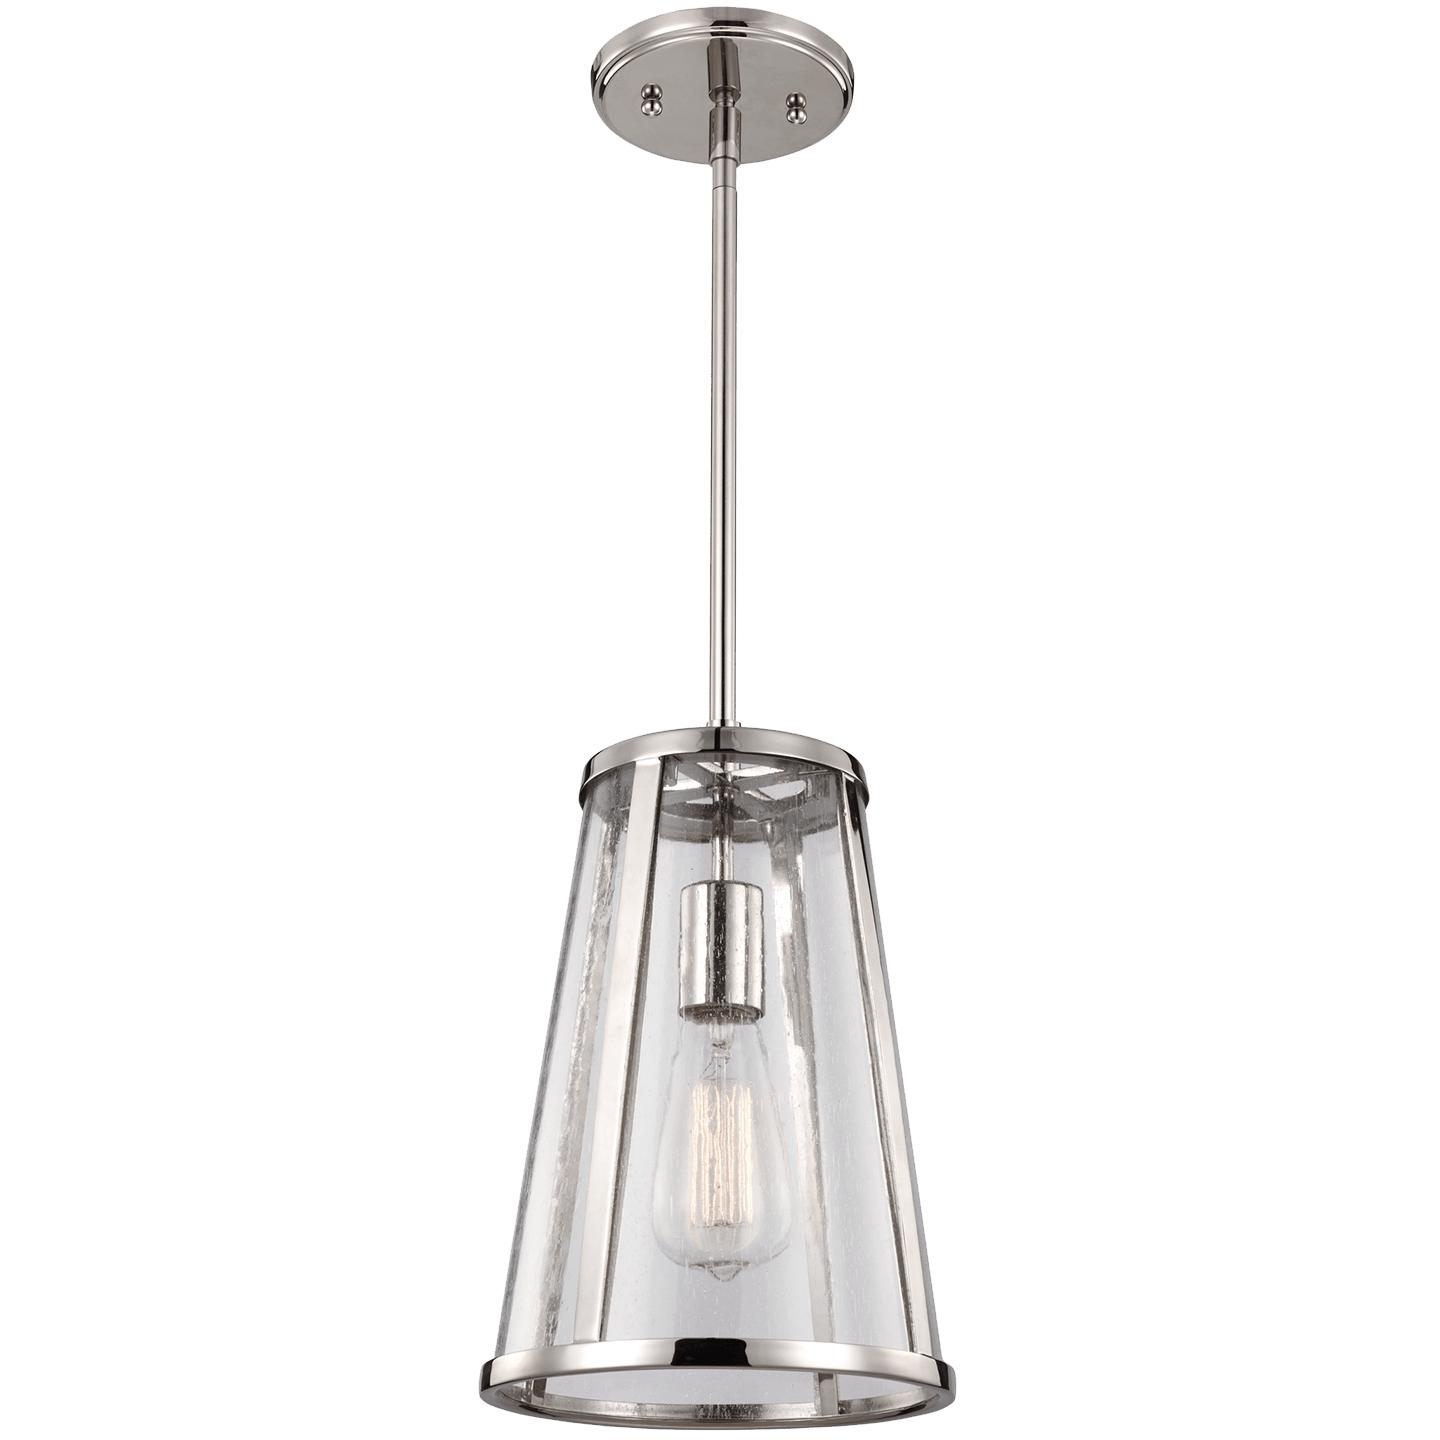 Купить Подвесной светильник Harrow Mini Pendant в интернет-магазине roooms.ru